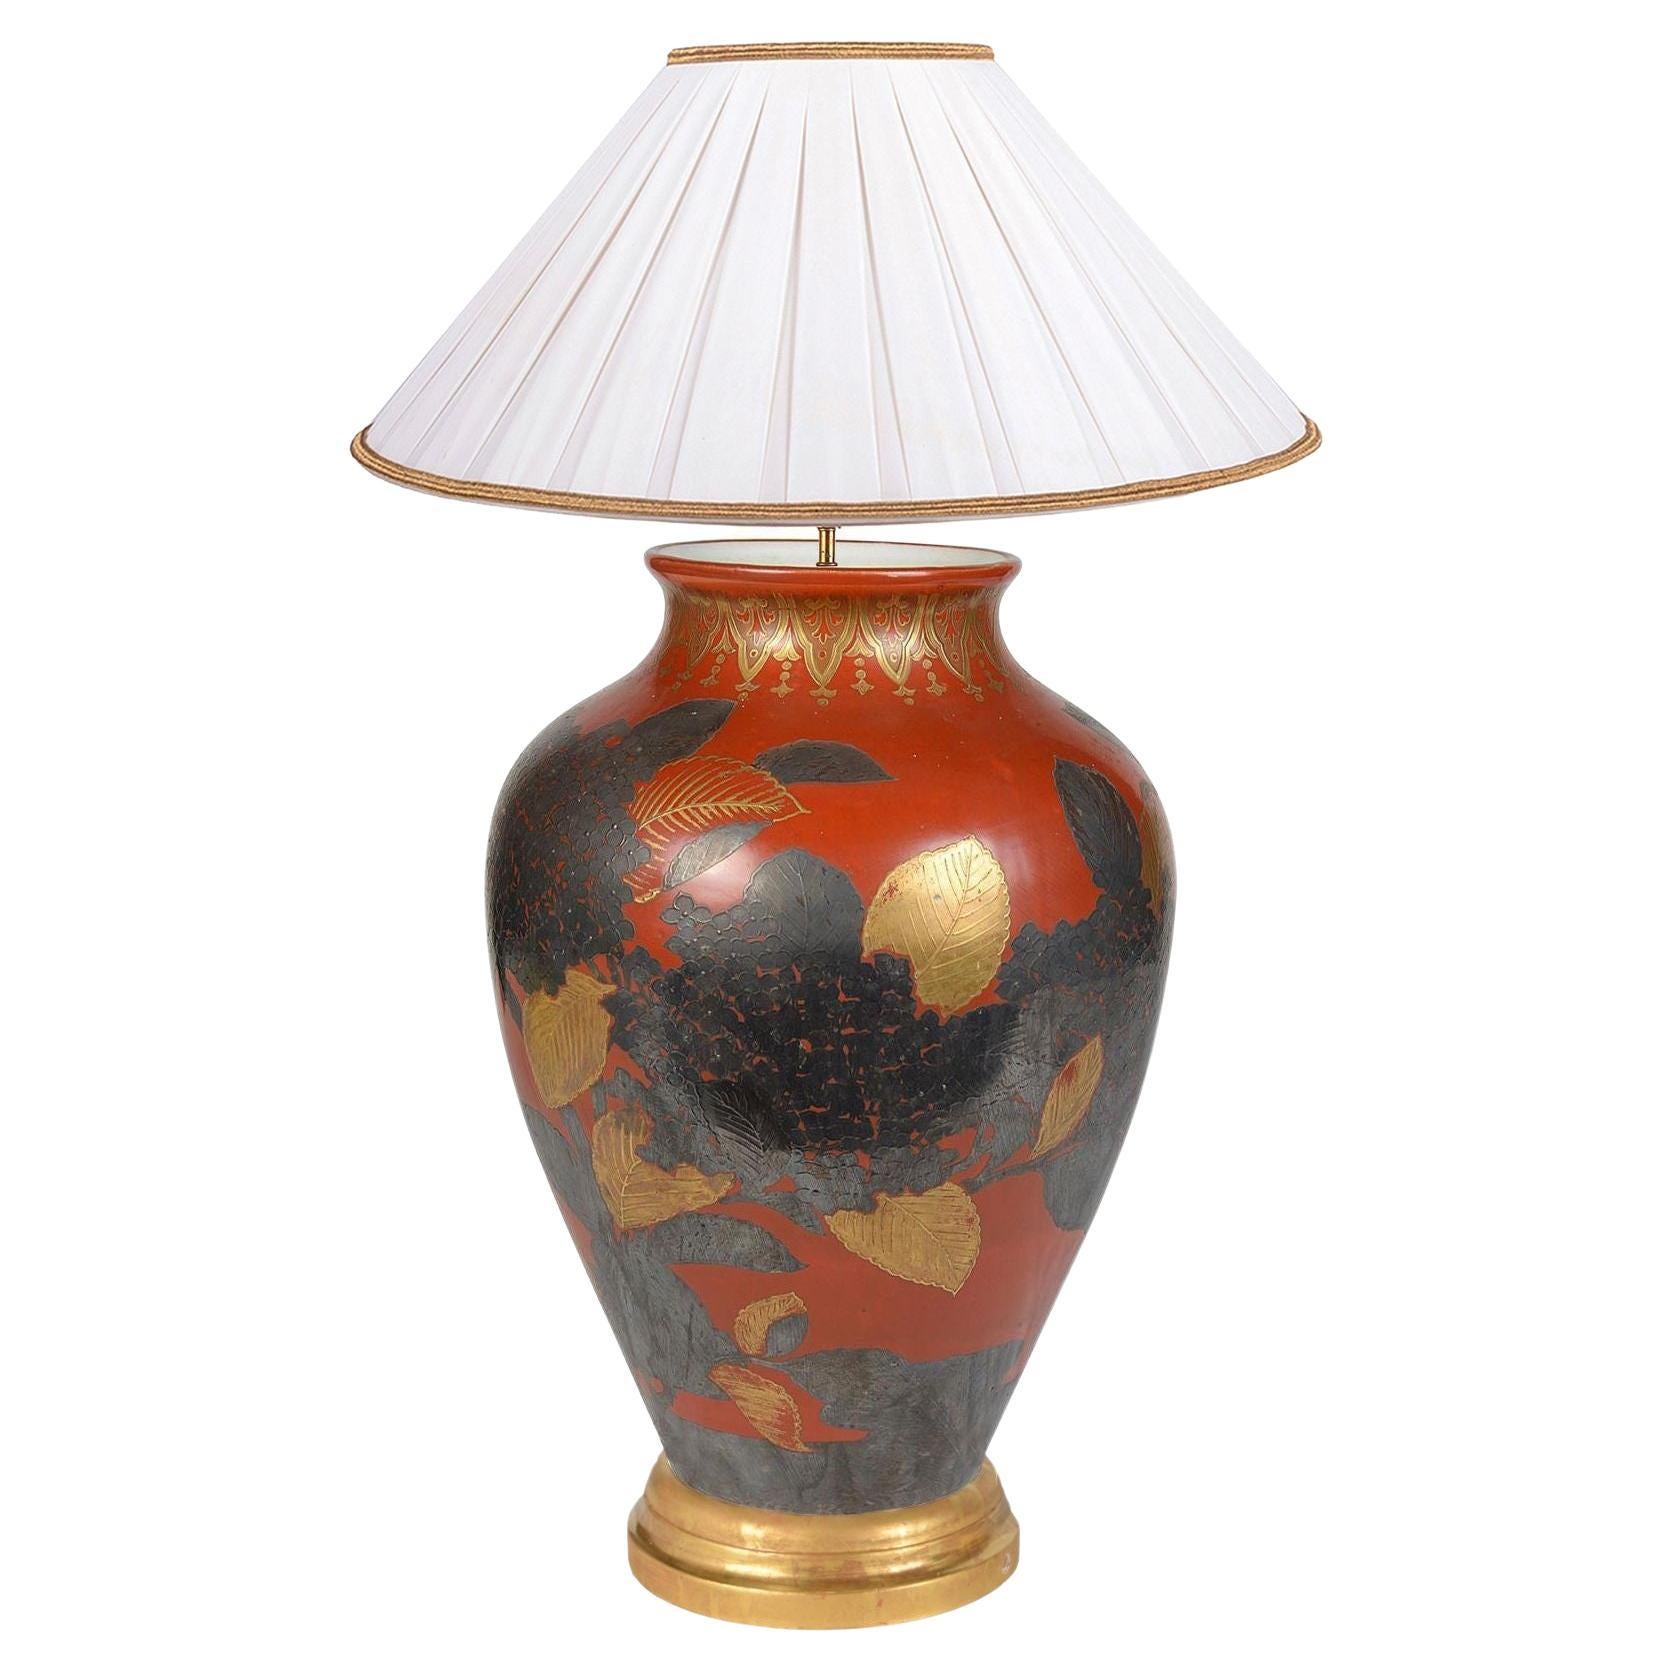 Japanische Vase/Lampe aus der Meiji-Zeit, um 1890